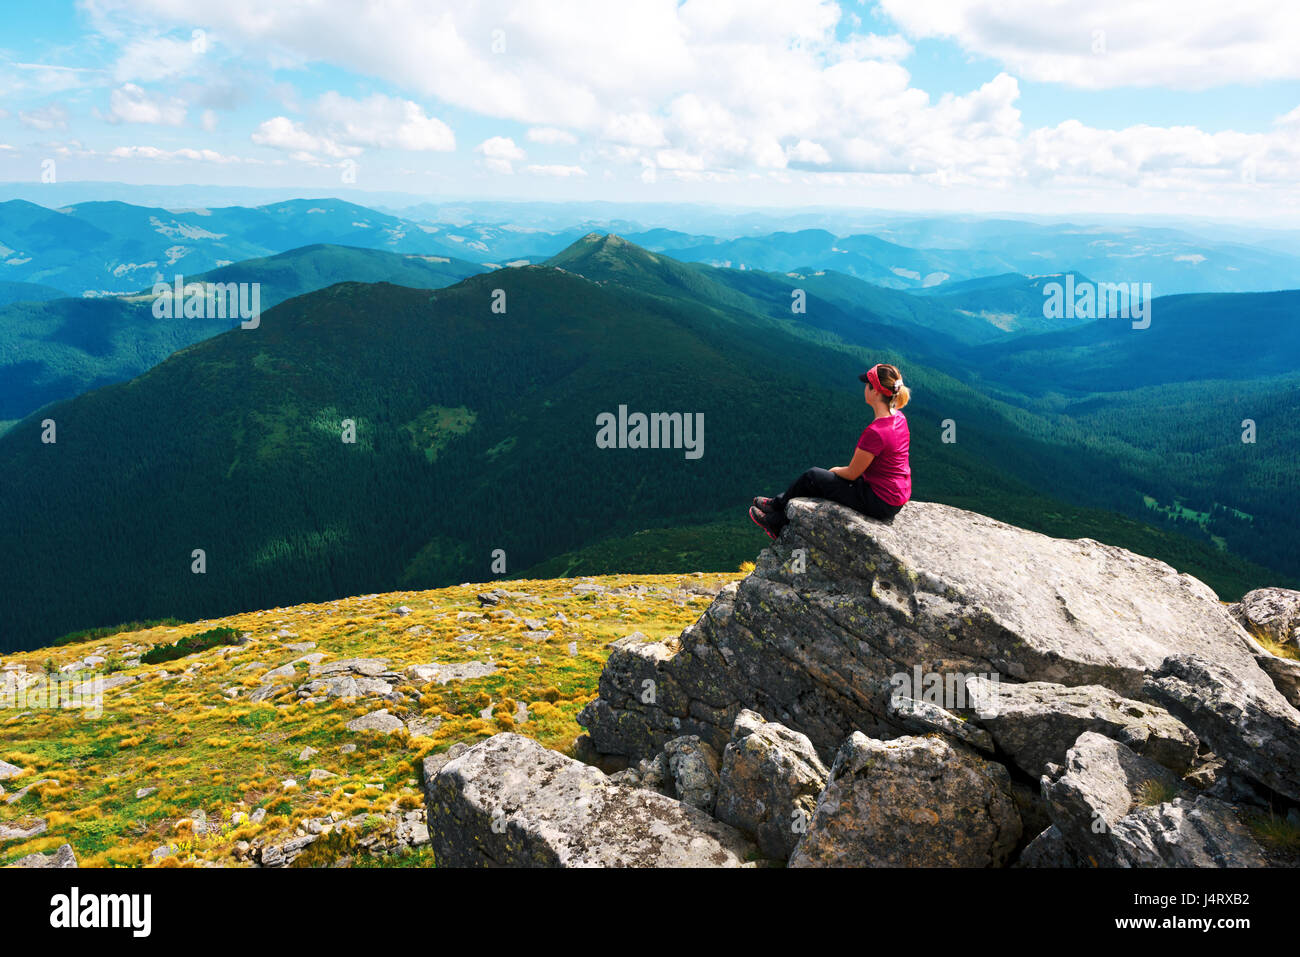 Un touriste solitaire assis sur le bord de la falaise, dans le contexte d'un incroyable paysage de montagne. Journée ensoleillée et ciel bleu Banque D'Images